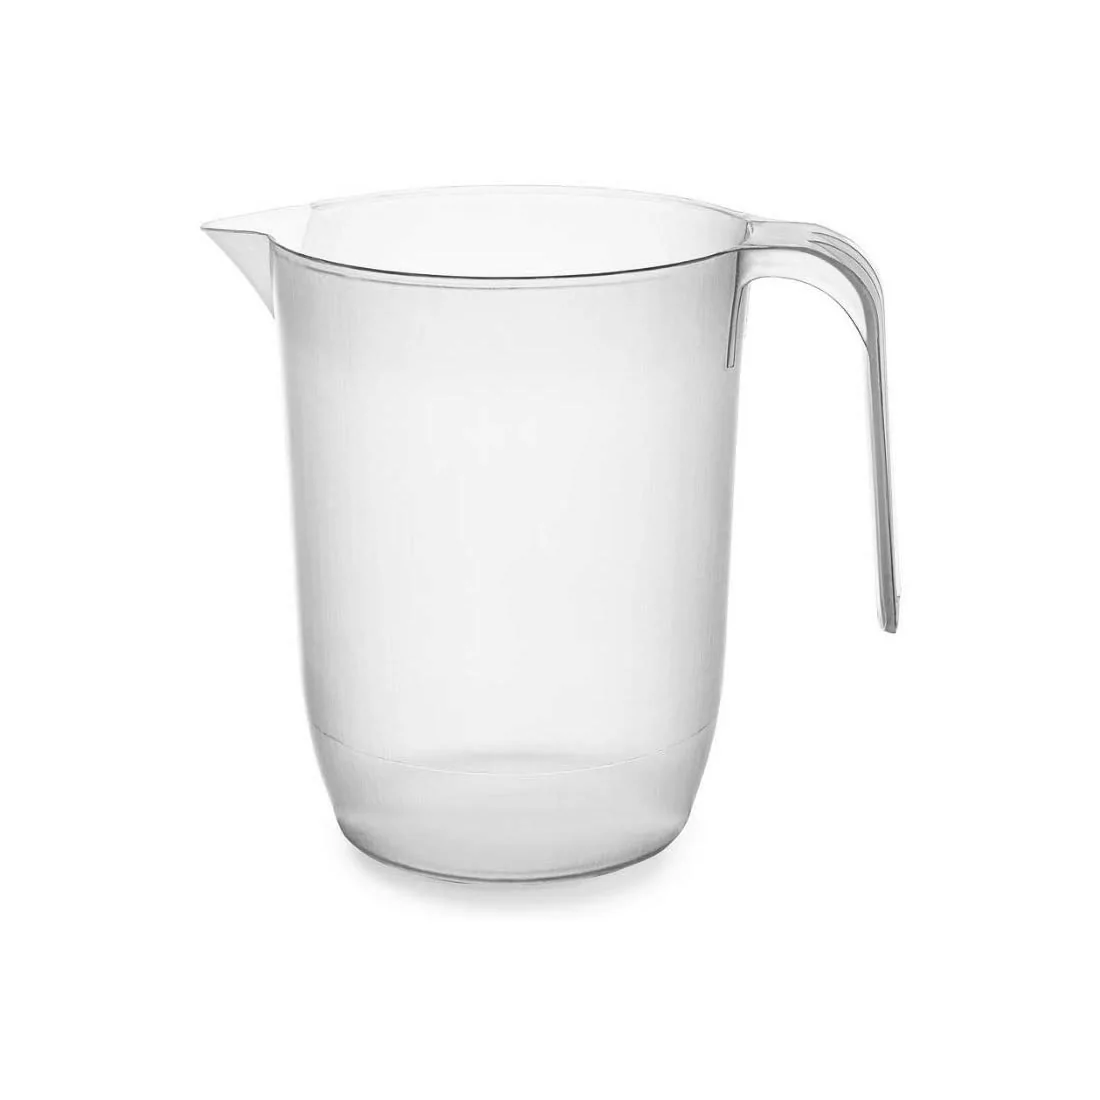 Plastic pitcher for aquarium